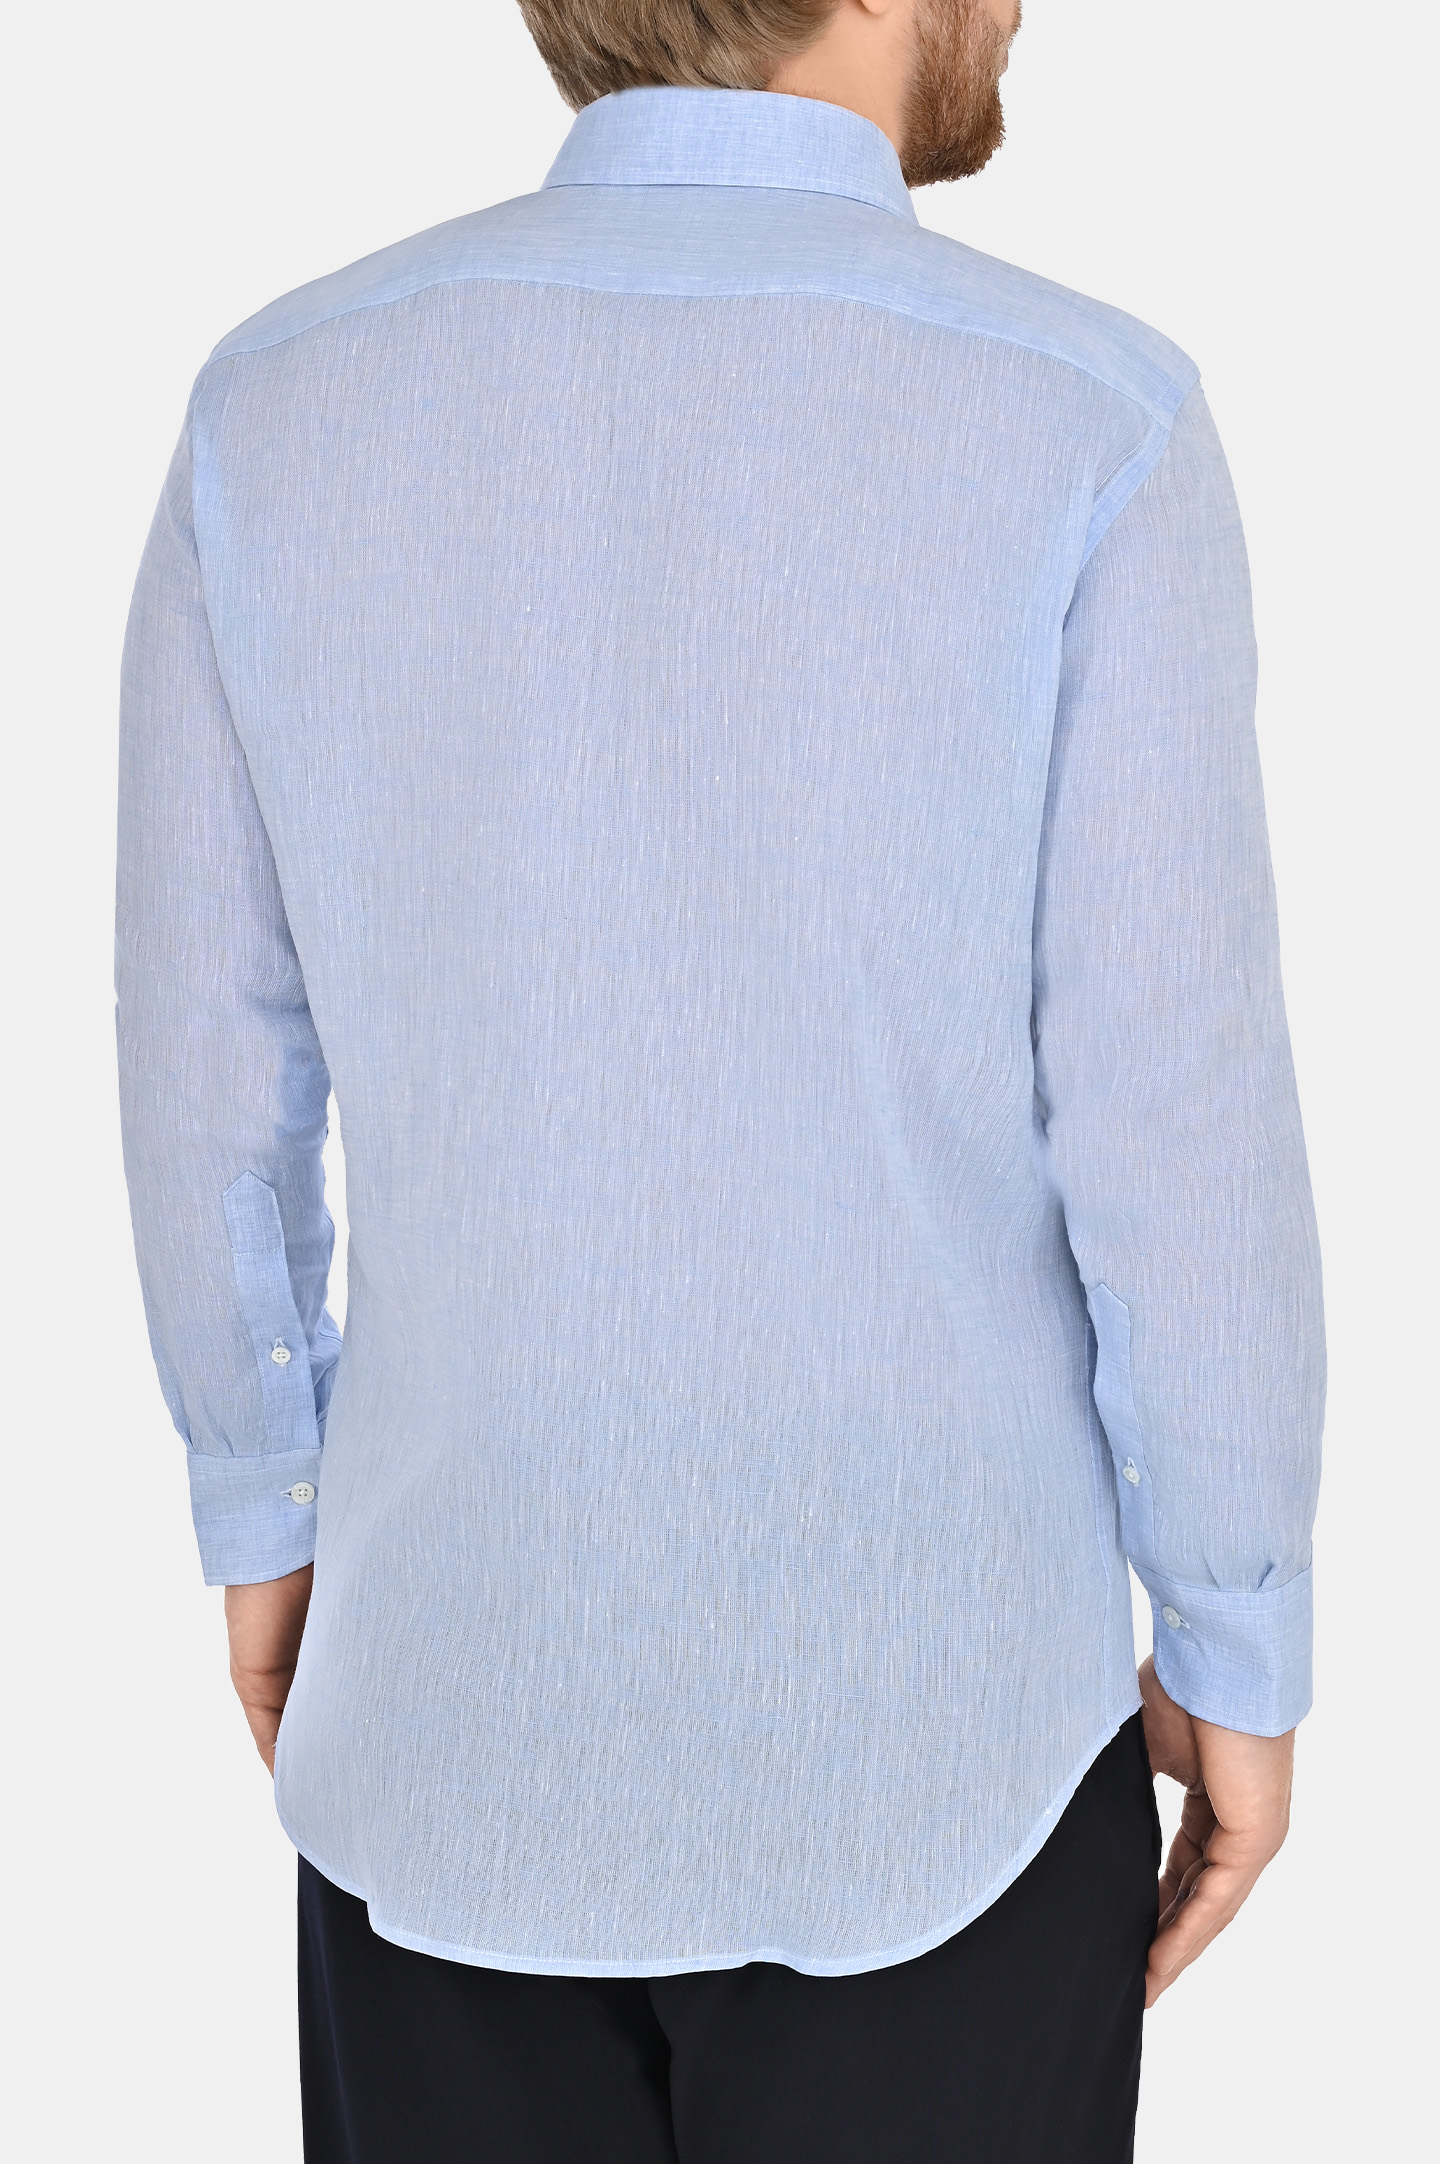 Льняная классическая рубашка CANALI GL03099 L777, цвет: Голубой, Мужской